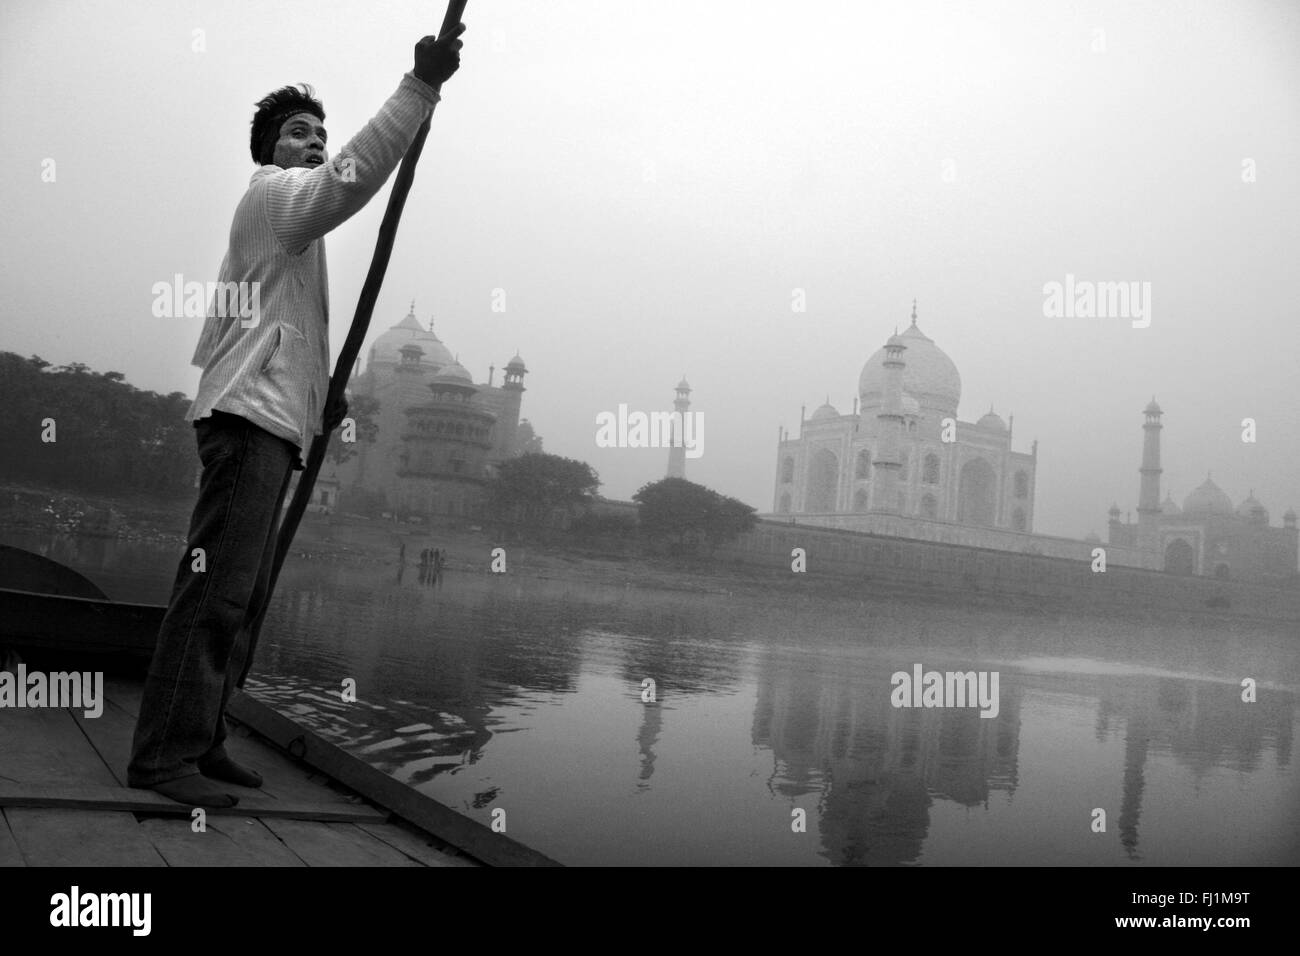 L'homme sur le bateau sur la rivière Yamuna, avec Taj Mahal, tôt le matin, Agra Inde Banque D'Images